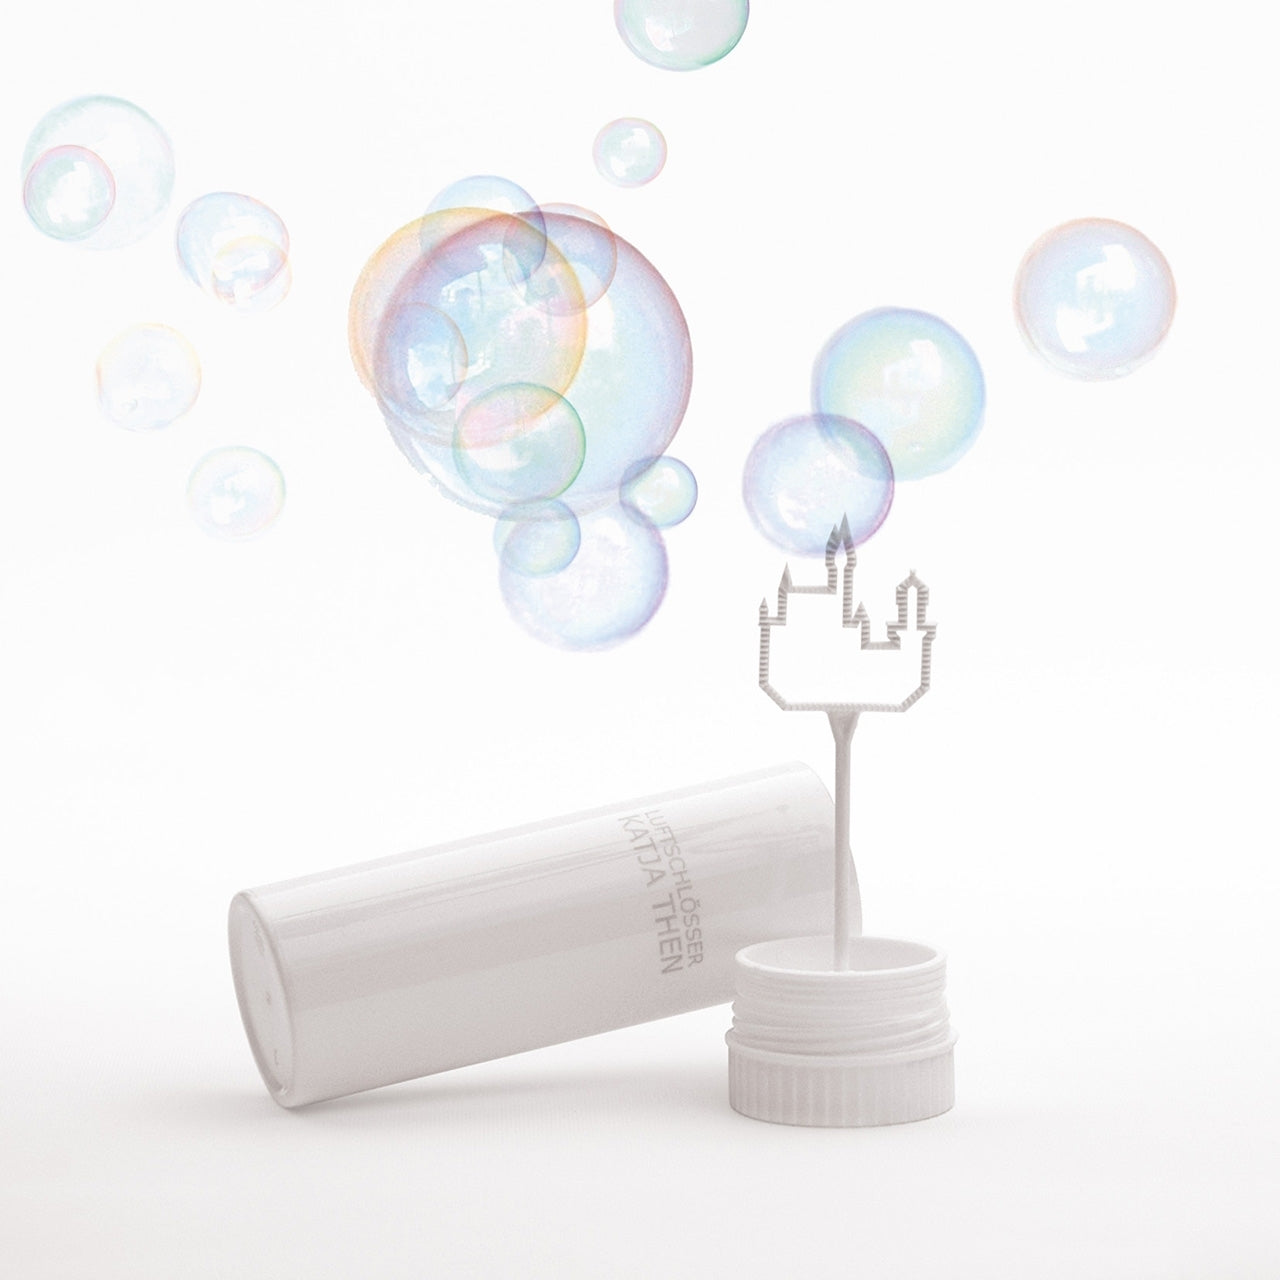 Seifenblasen 'Luftschloss' - eine magische Auszeit vom Alltag